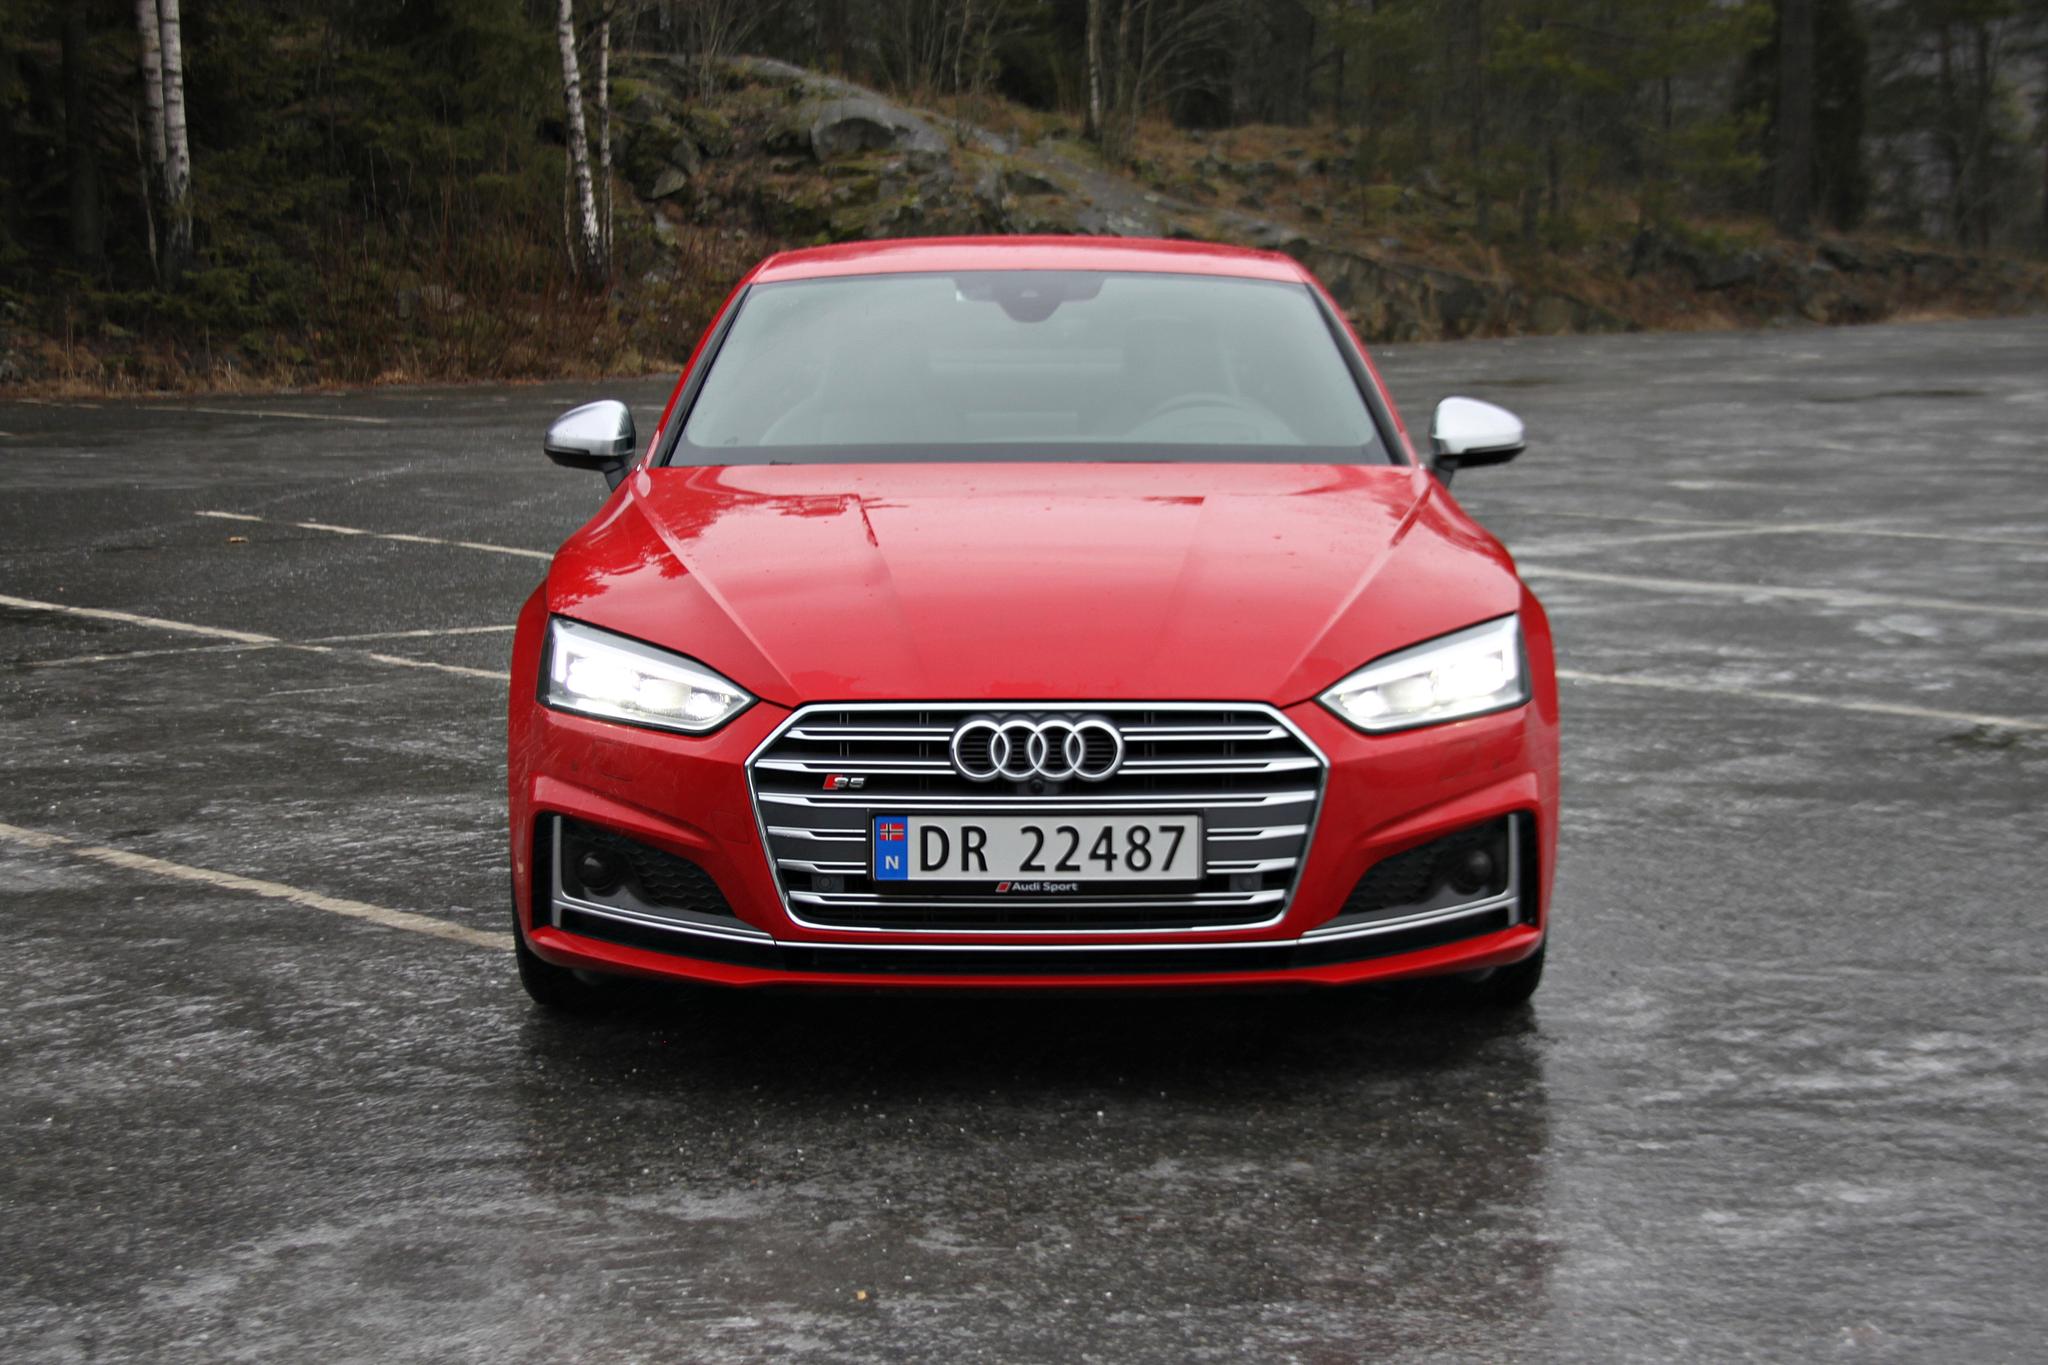  LIKHET: Forfra er den så å si identisk med en Audi A4. FOTO: Morten Abrahamsen / NTB tema  